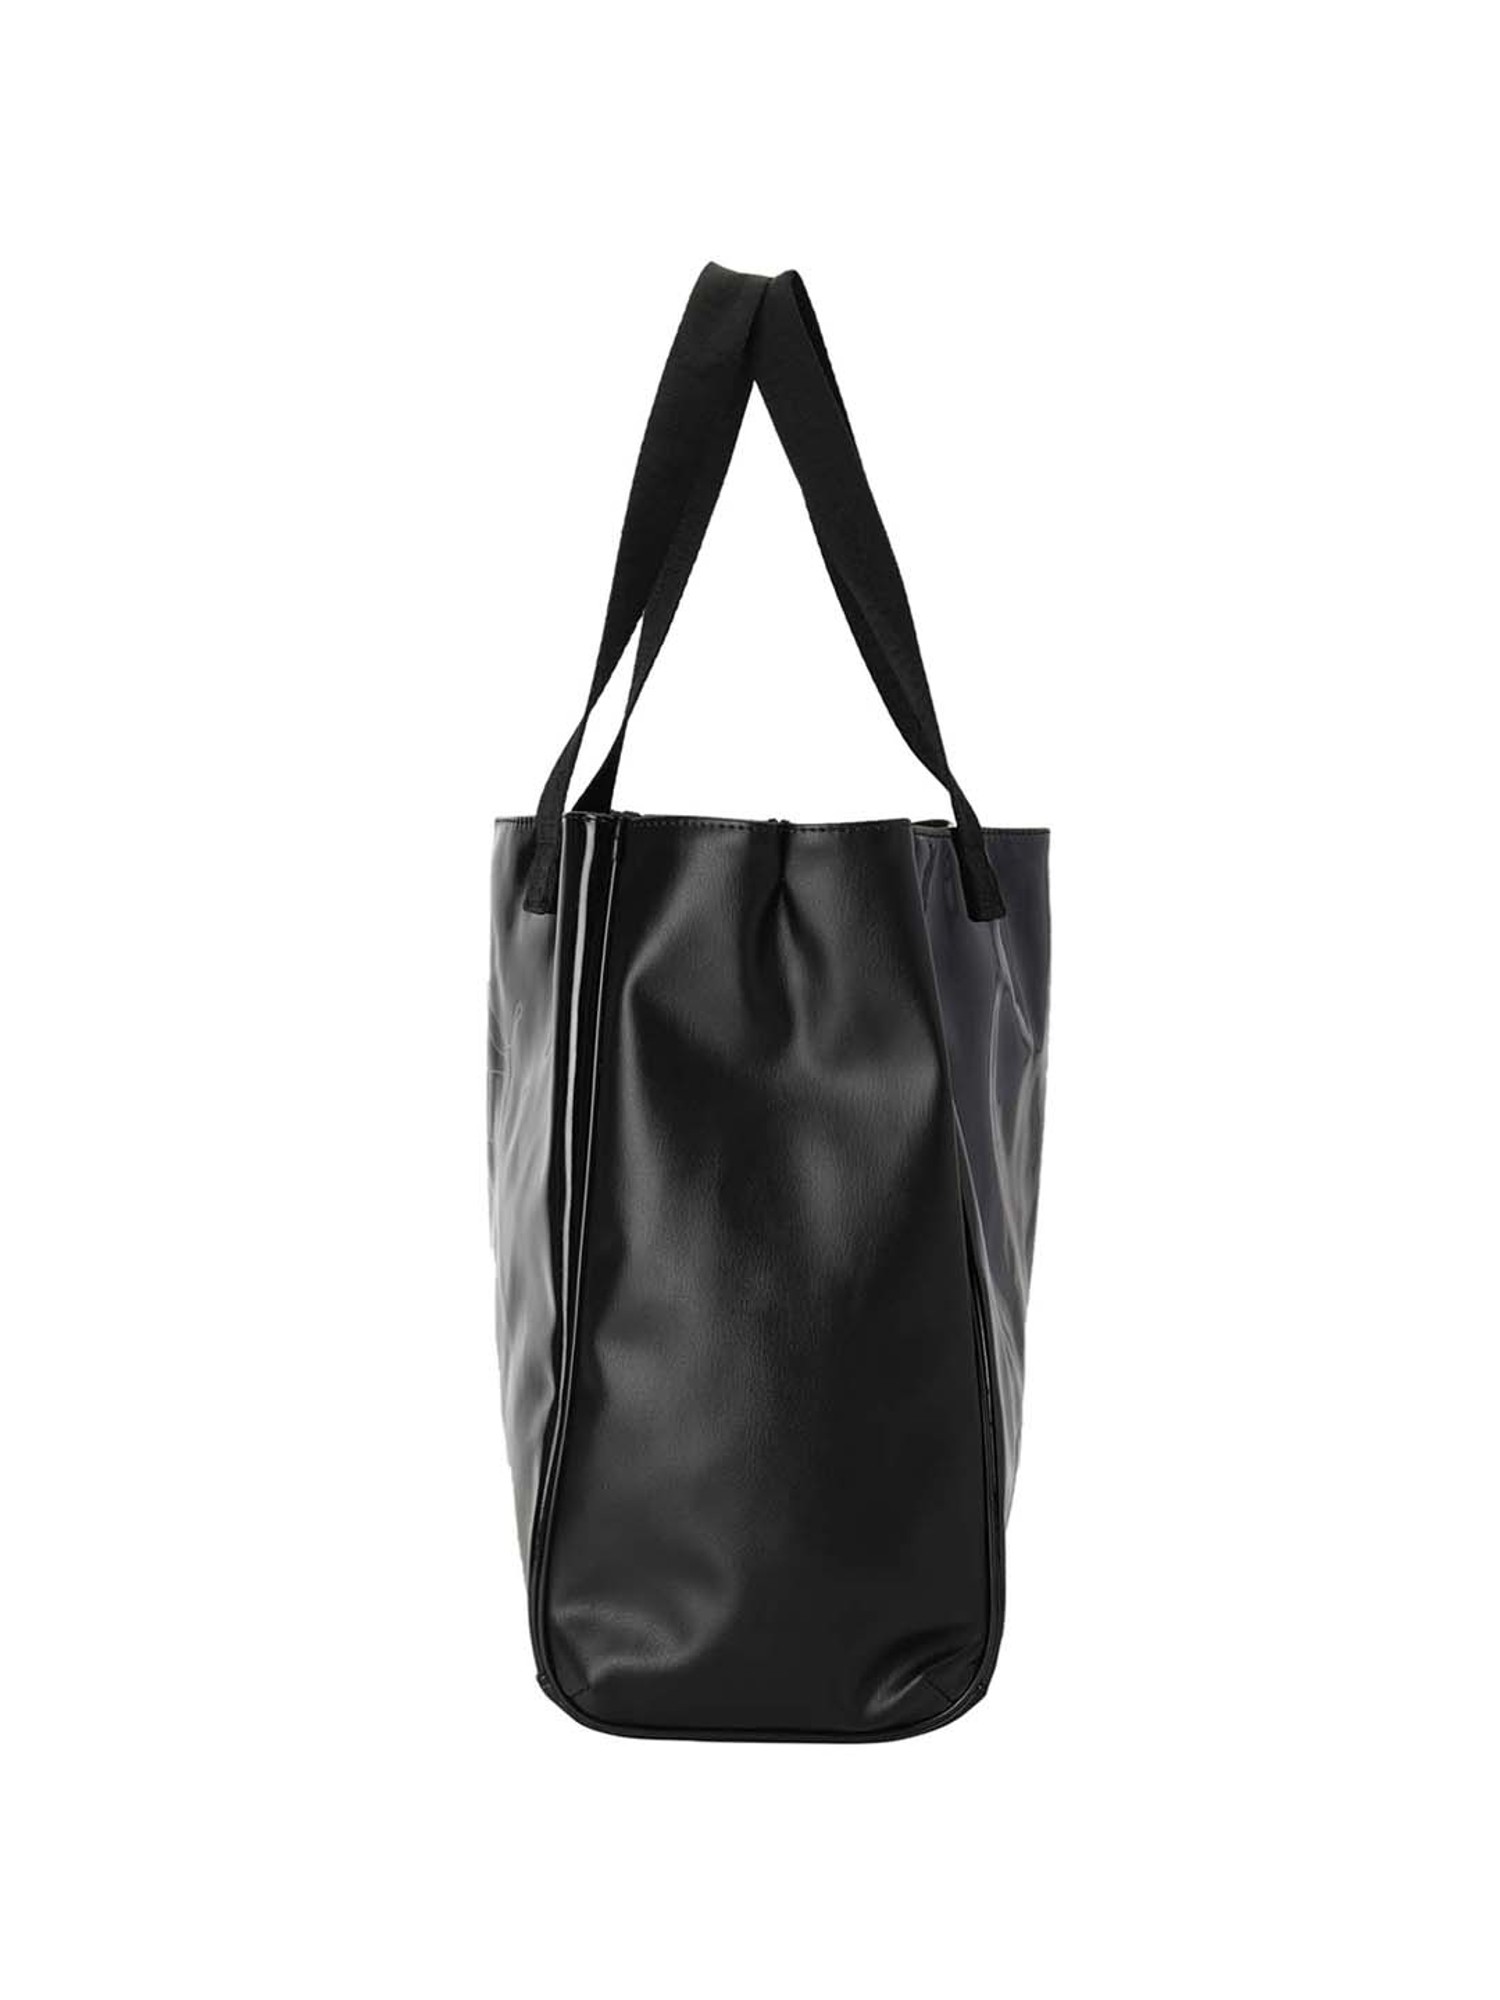 Buy Puma Core Shopper Black Solid Small Tote Handbag For Women At Best  Price @ Tata CLiQ